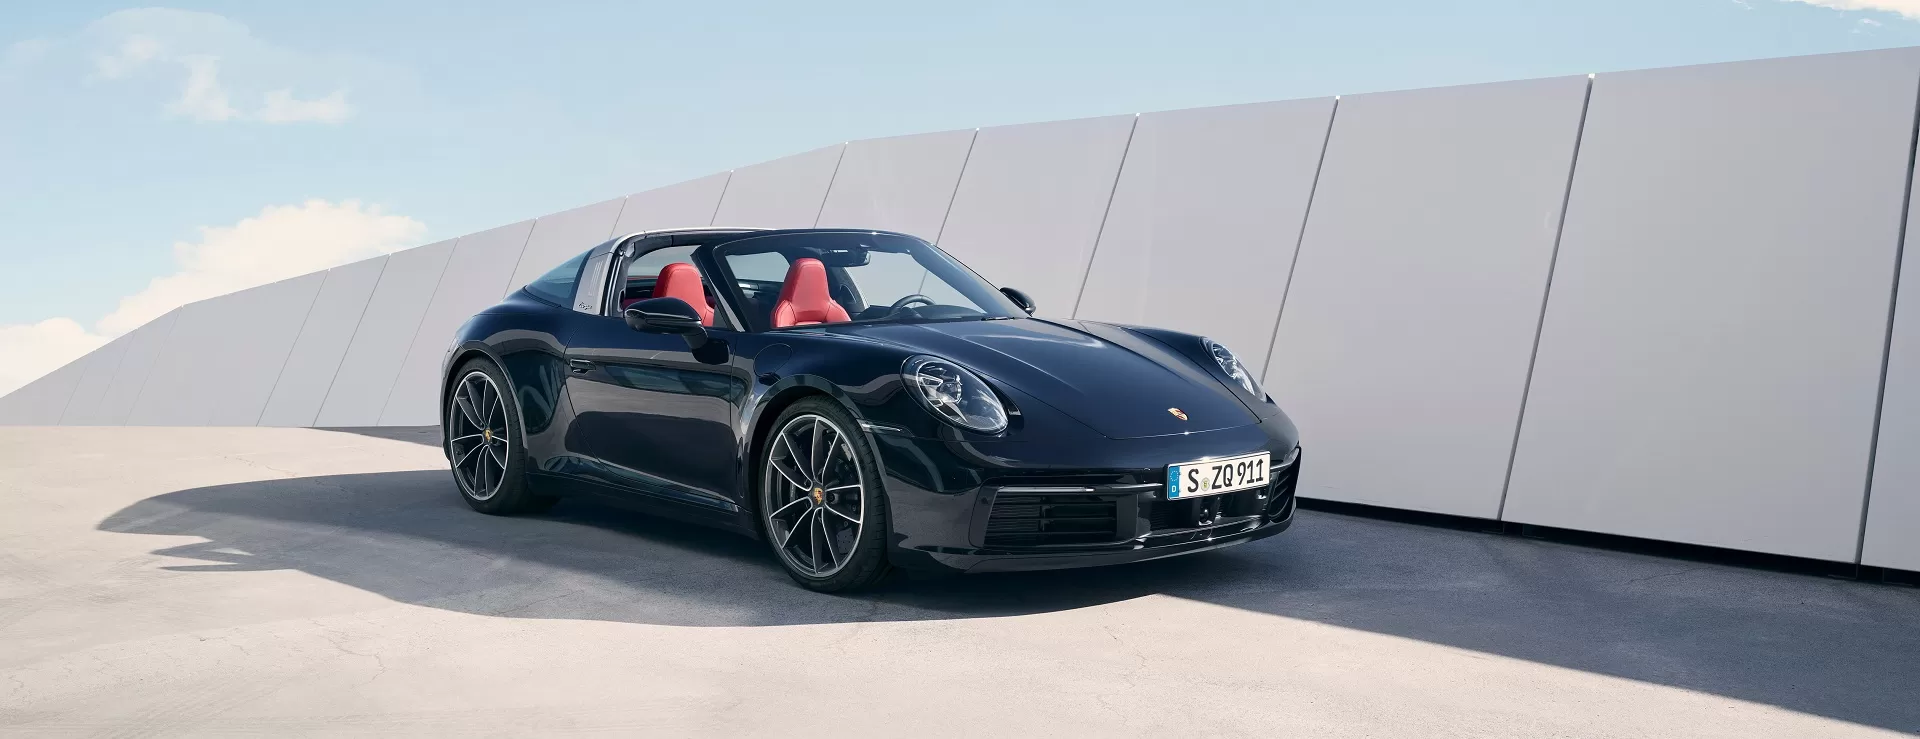 Элегантный, экстравагантный, уникальный: новый Porsche 911 Targa